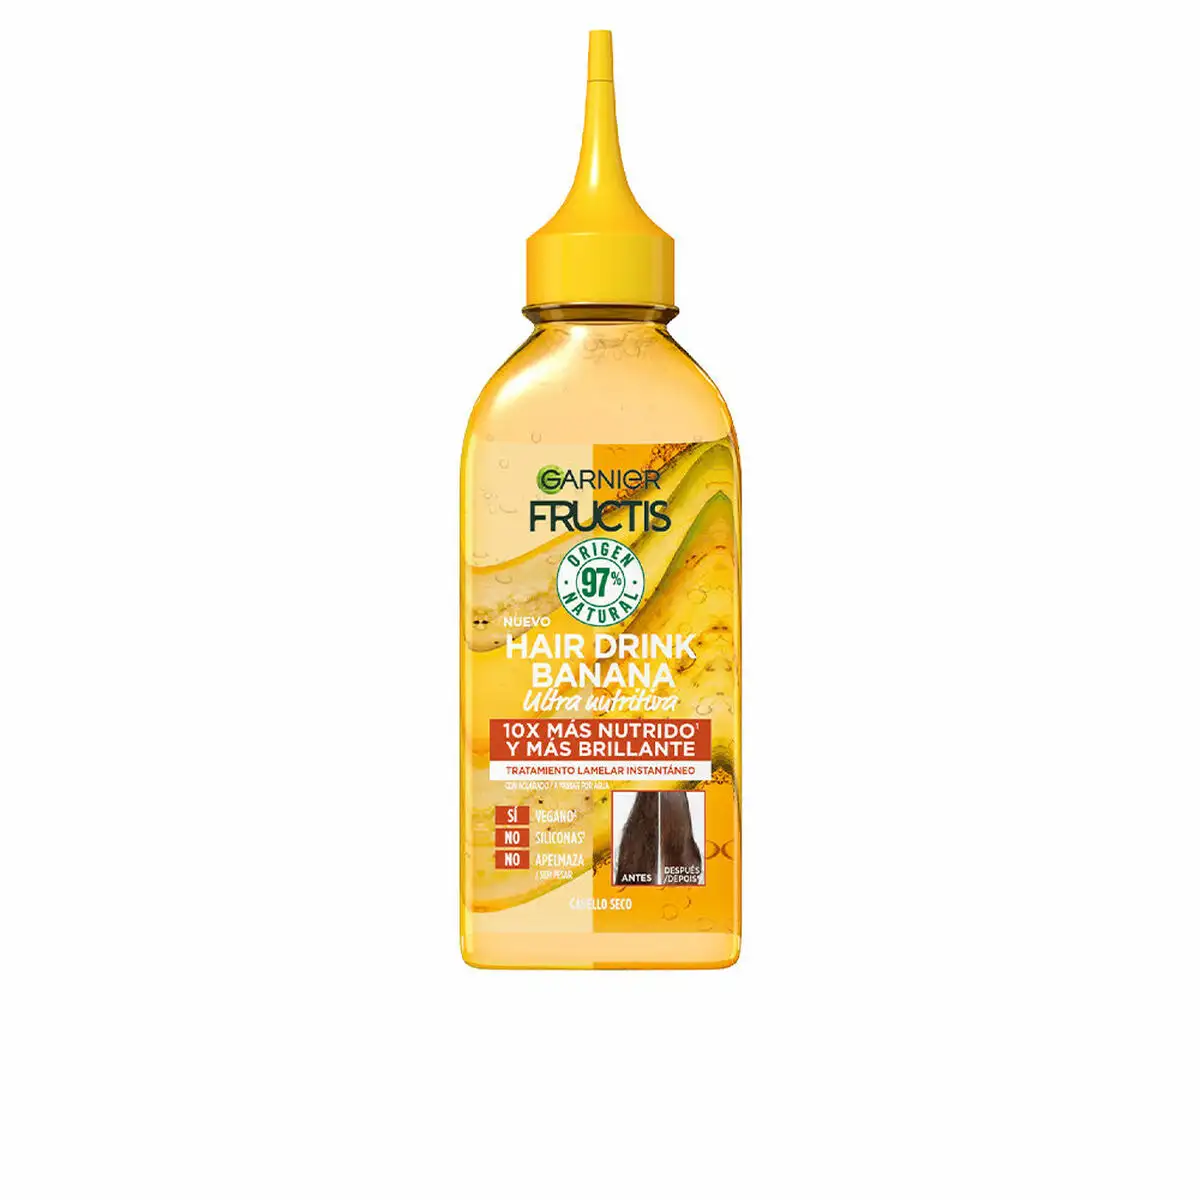 Apres shampoing nutritif garnier fructis hair drink liquide banana 200 ml _9264. Bienvenue chez DIAYTAR SENEGAL - Où Chaque Objet a sa Propre Histoire. Découvrez notre sélection soigneusement choisie et choisissez des produits qui racontent le patrimoine sénégalais.